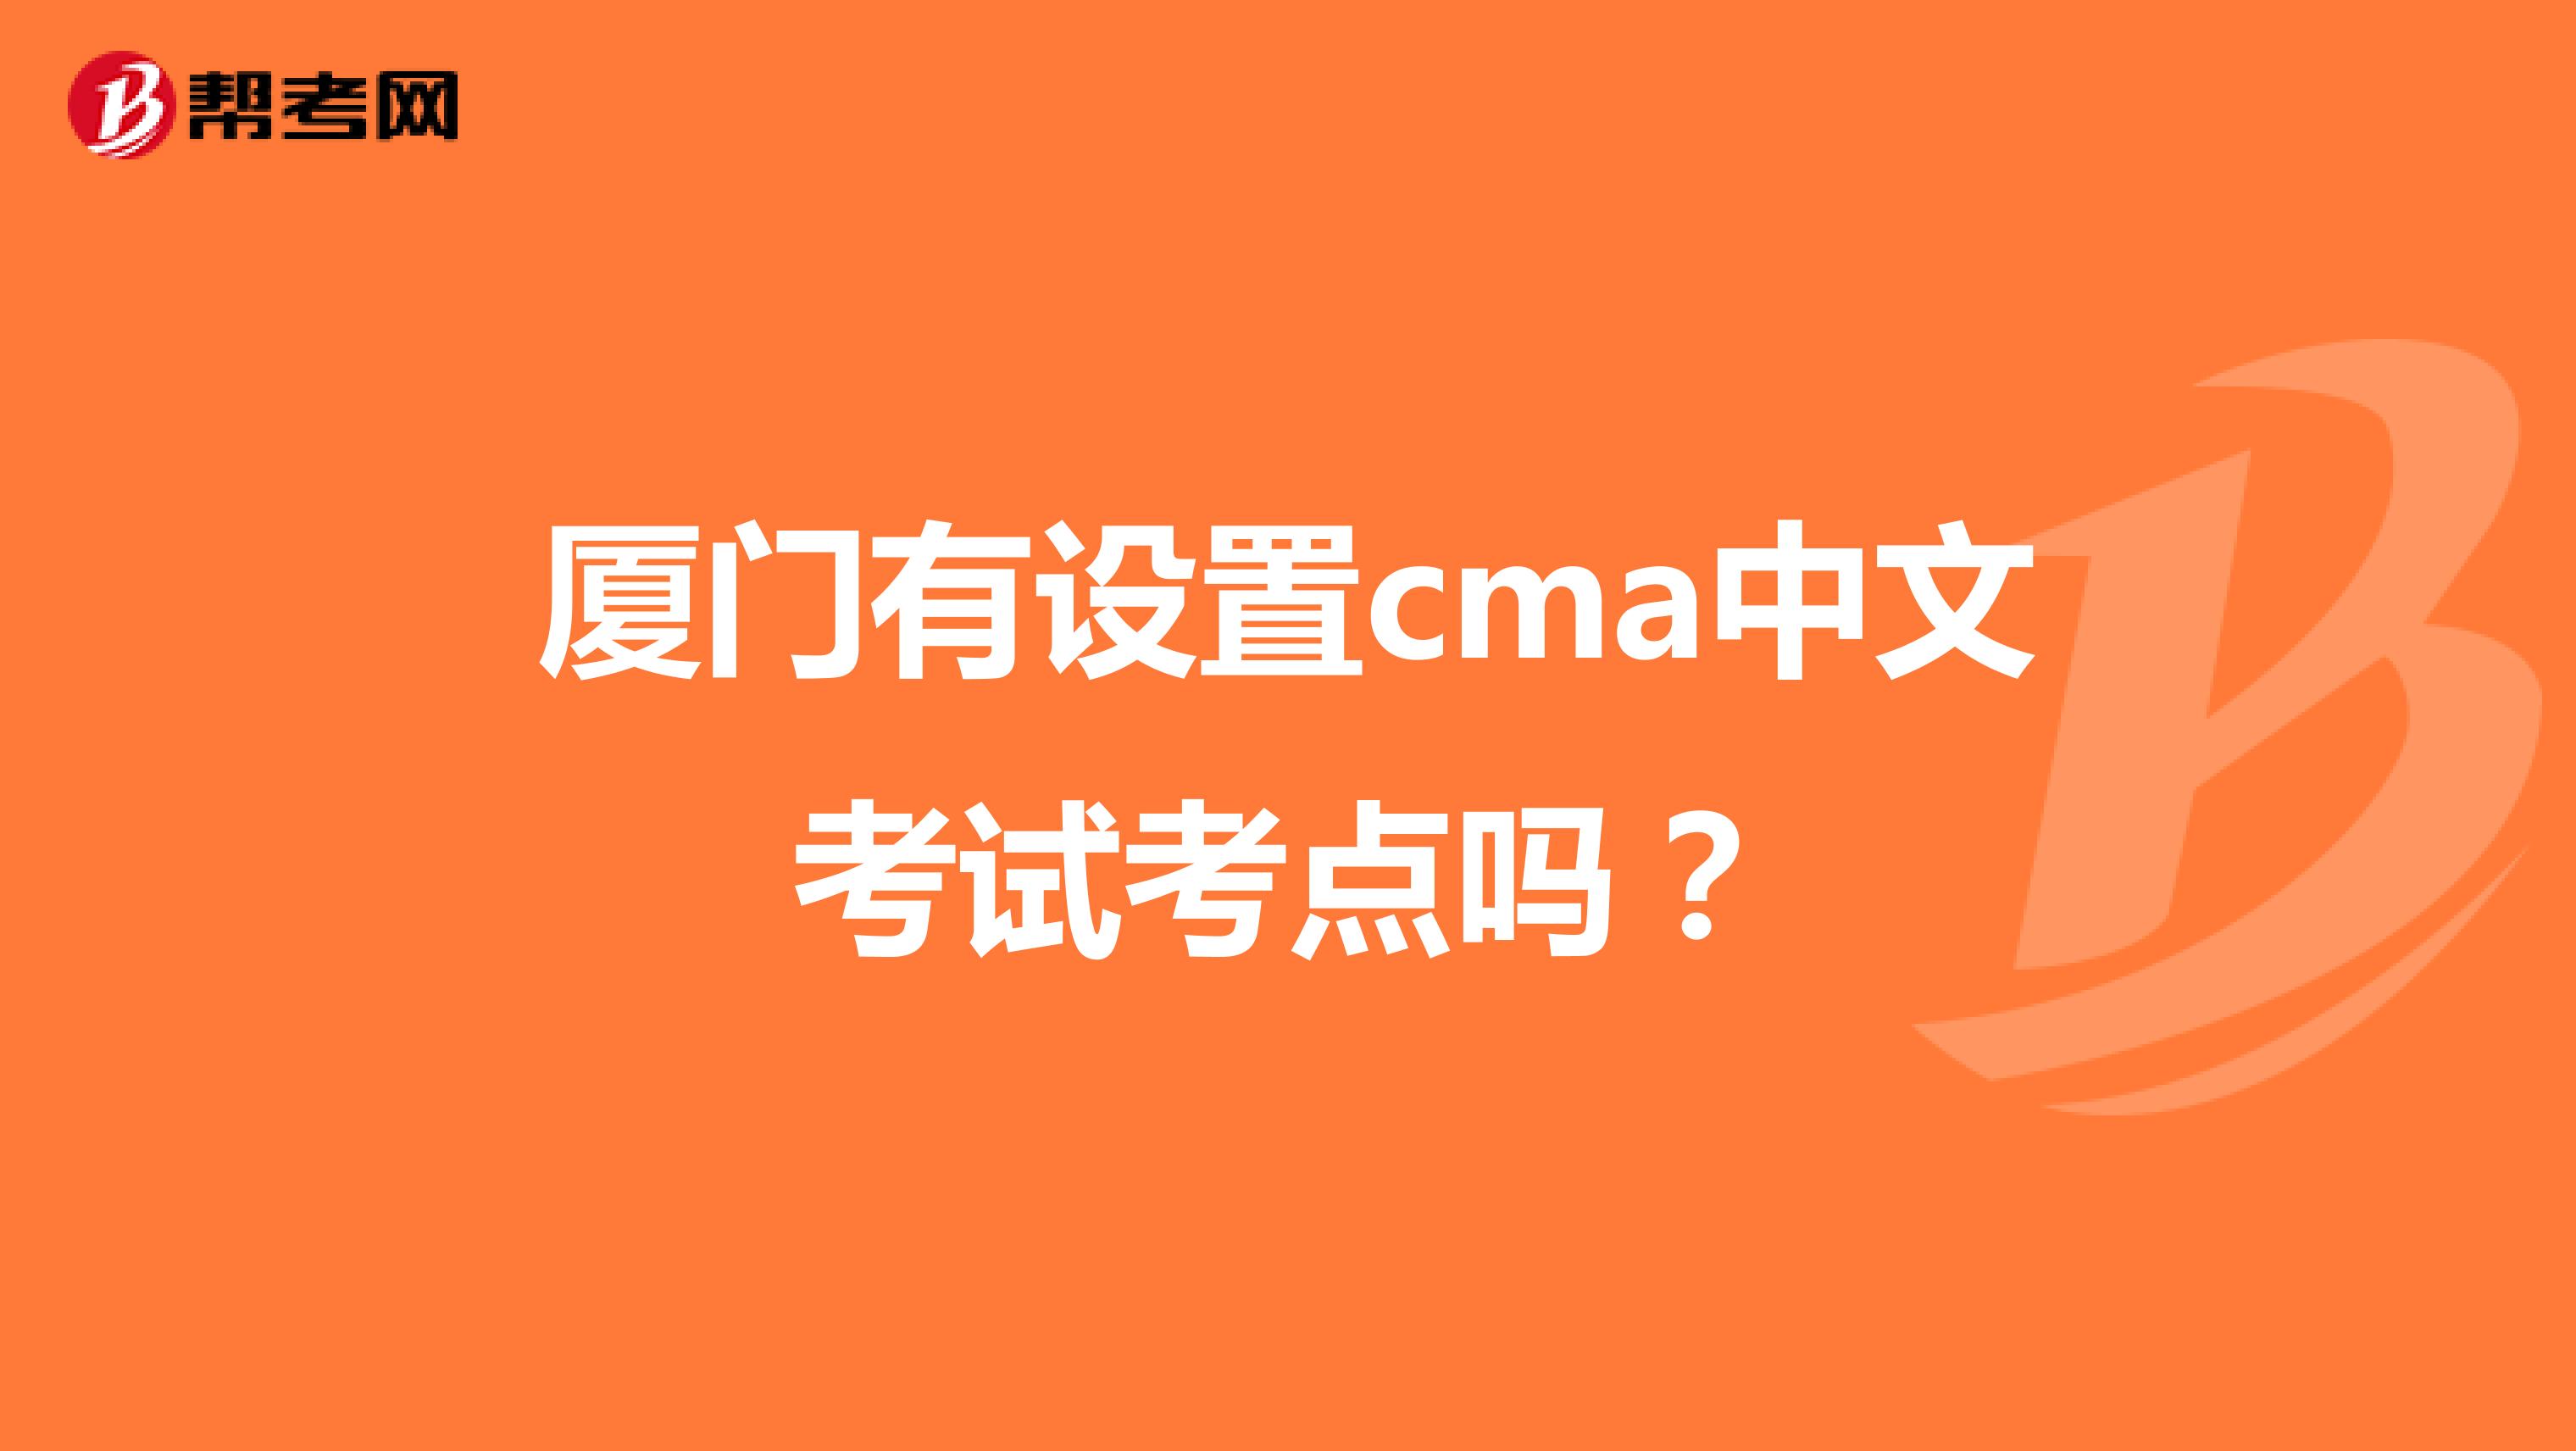 厦门有设置cma中文考试考点吗？